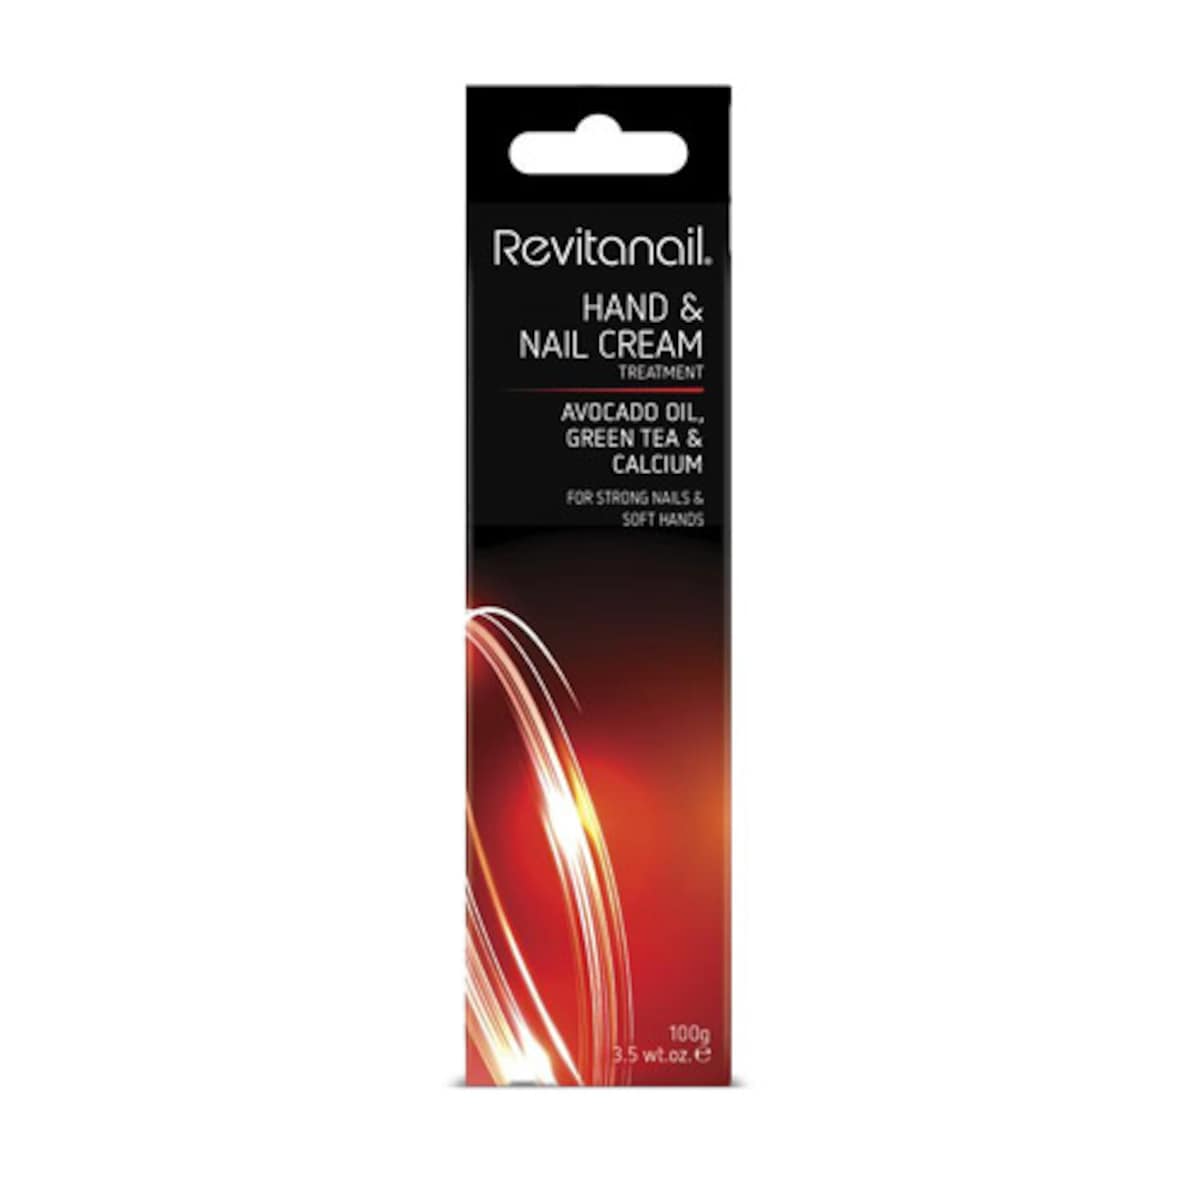 Revitanail Hand & Nail Cream Treatment 100g